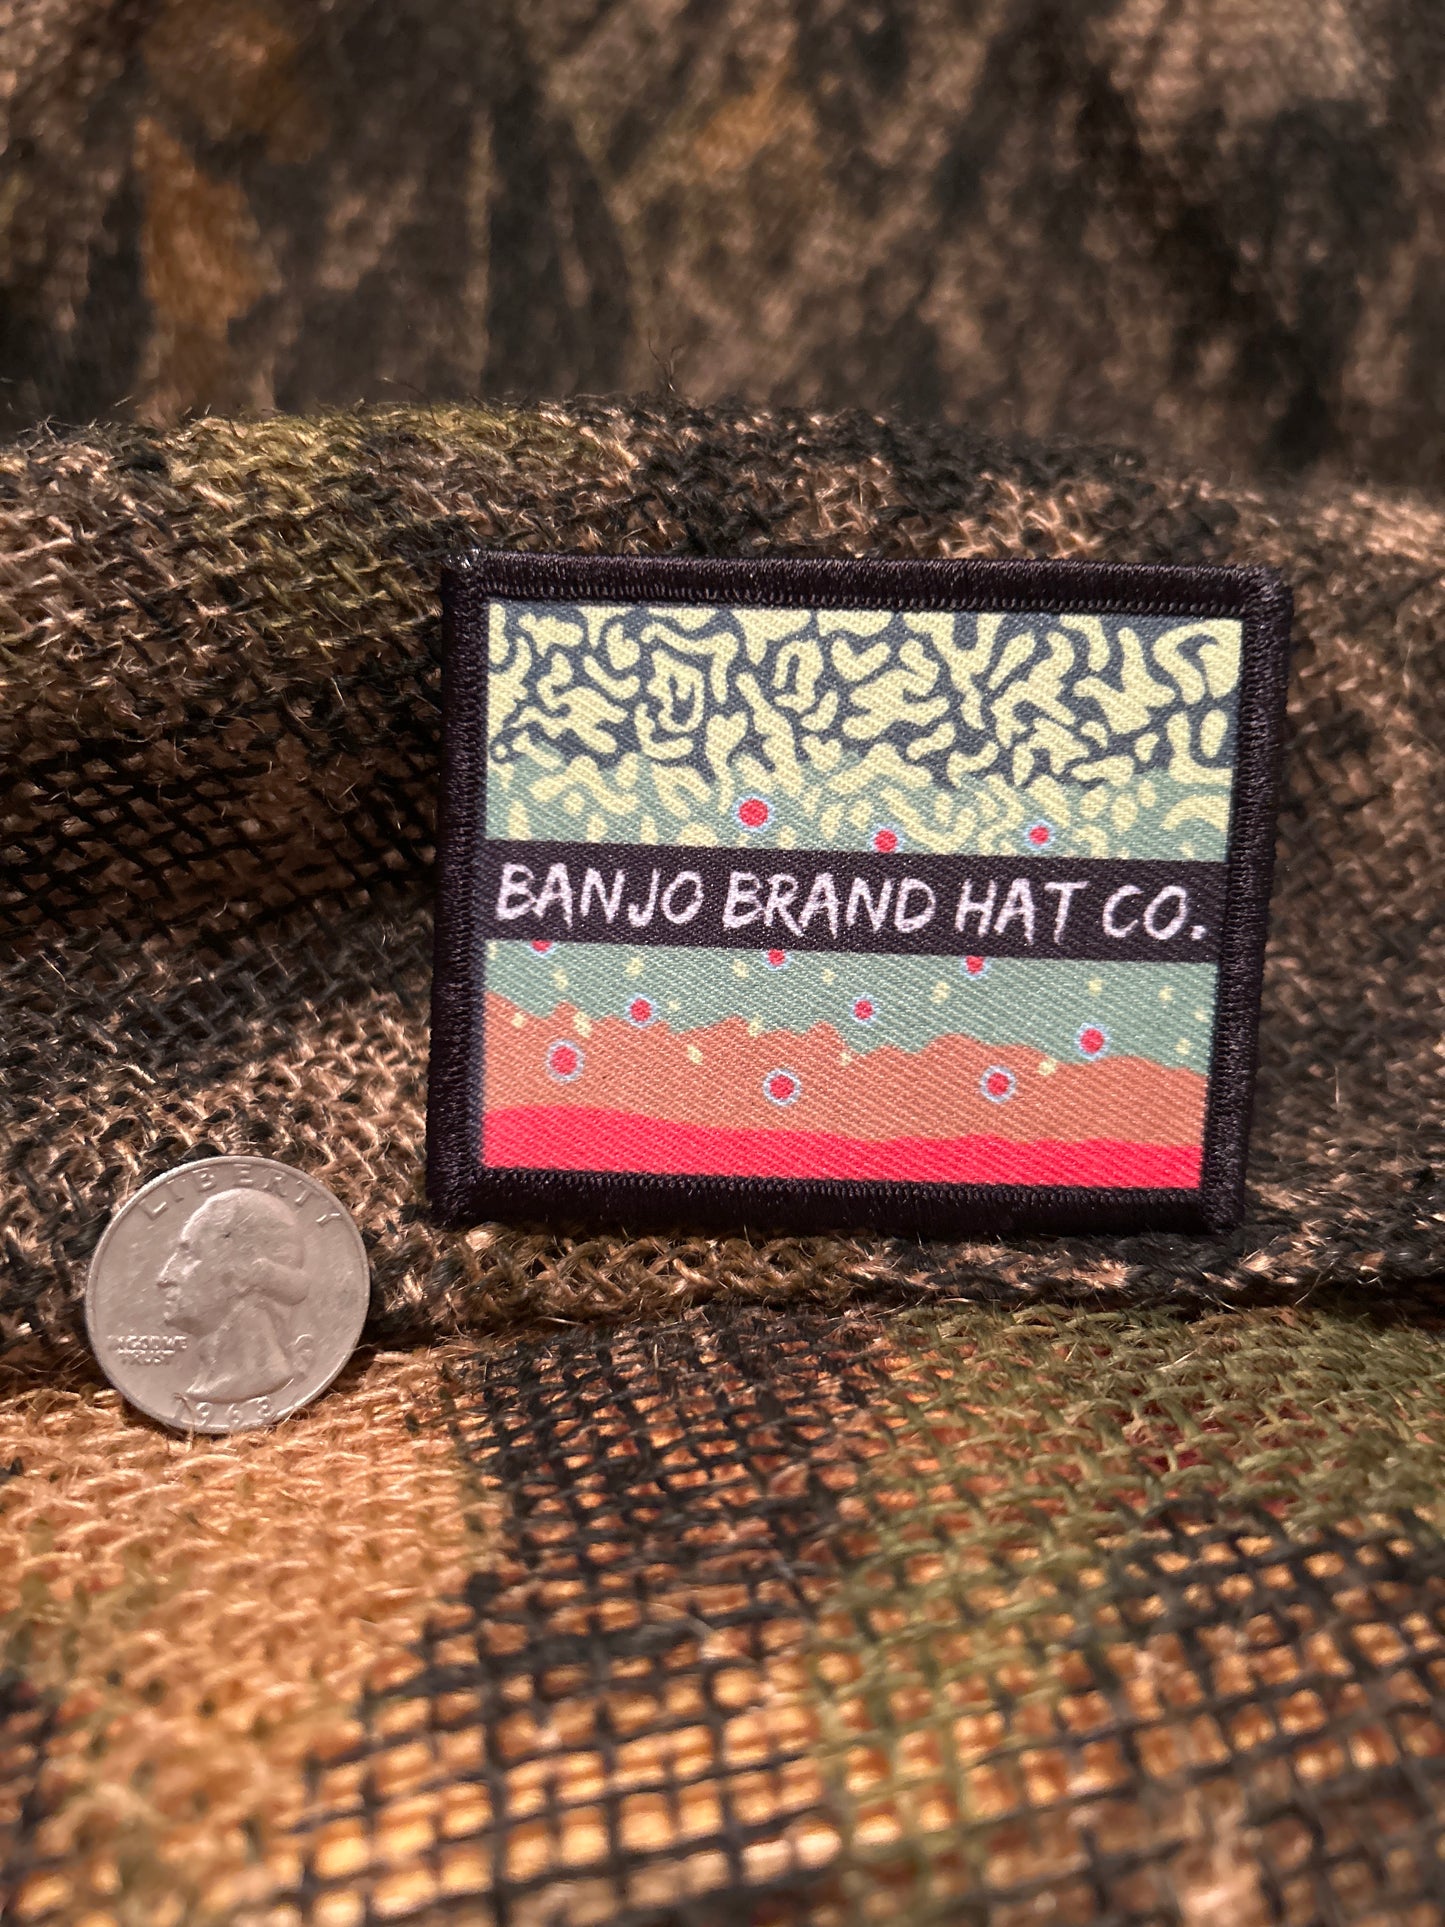 Banjo Brand Brooke Trout patch